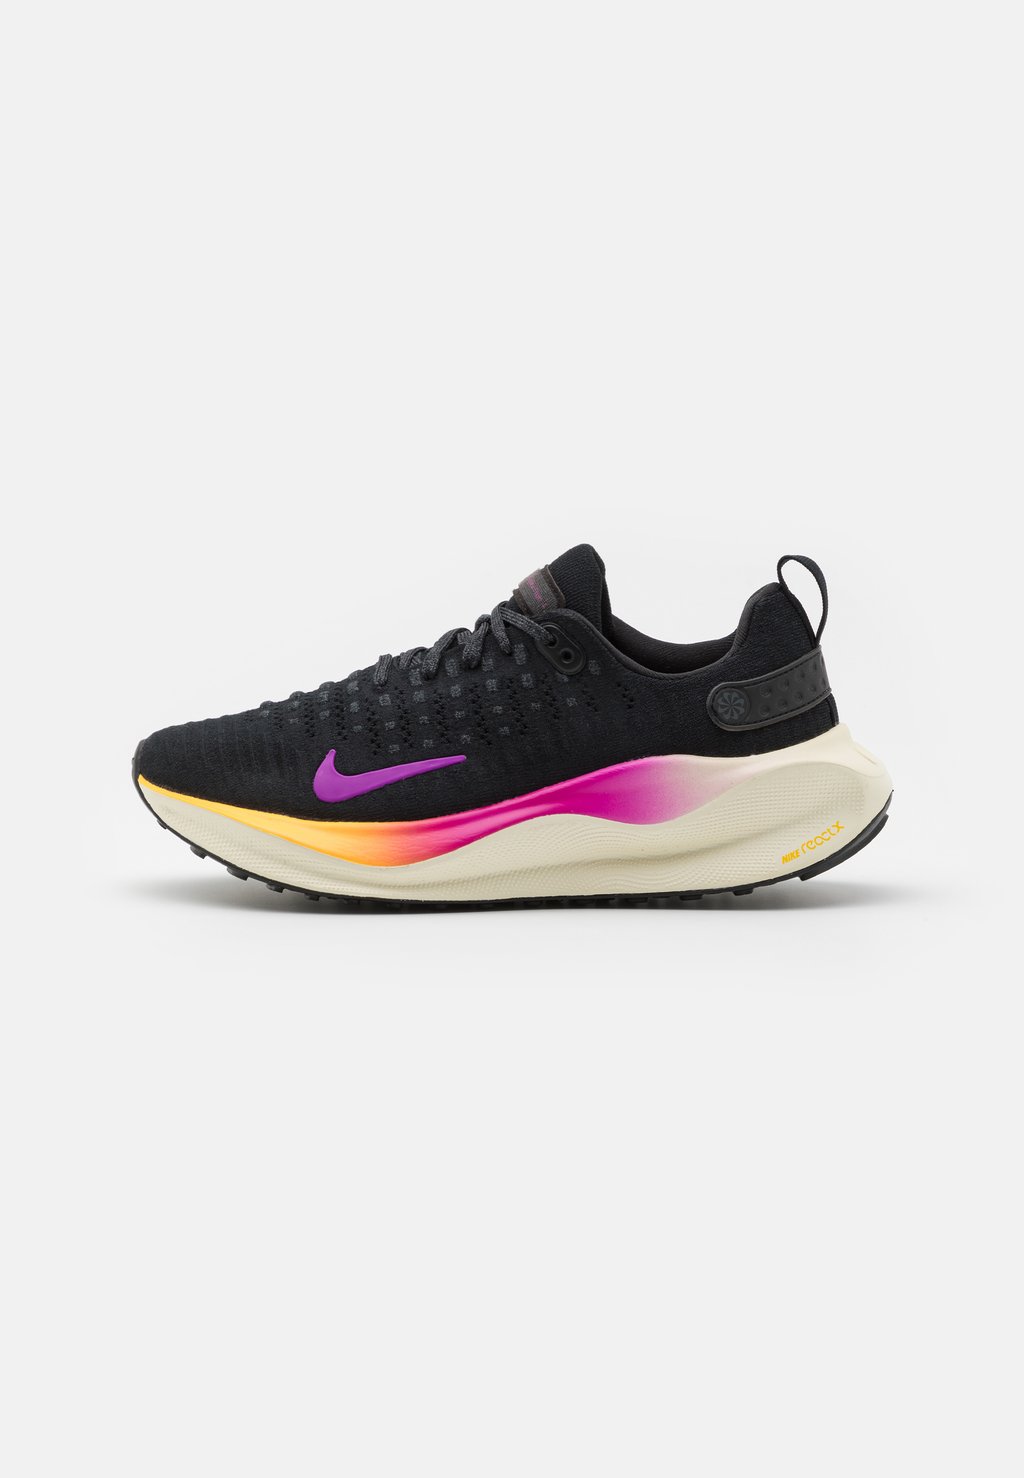 Нейтральные кроссовки REACTX INFINITY RUN 4 Nike, цвет black/hyper violet/anthracite/coconut milk/laser orange